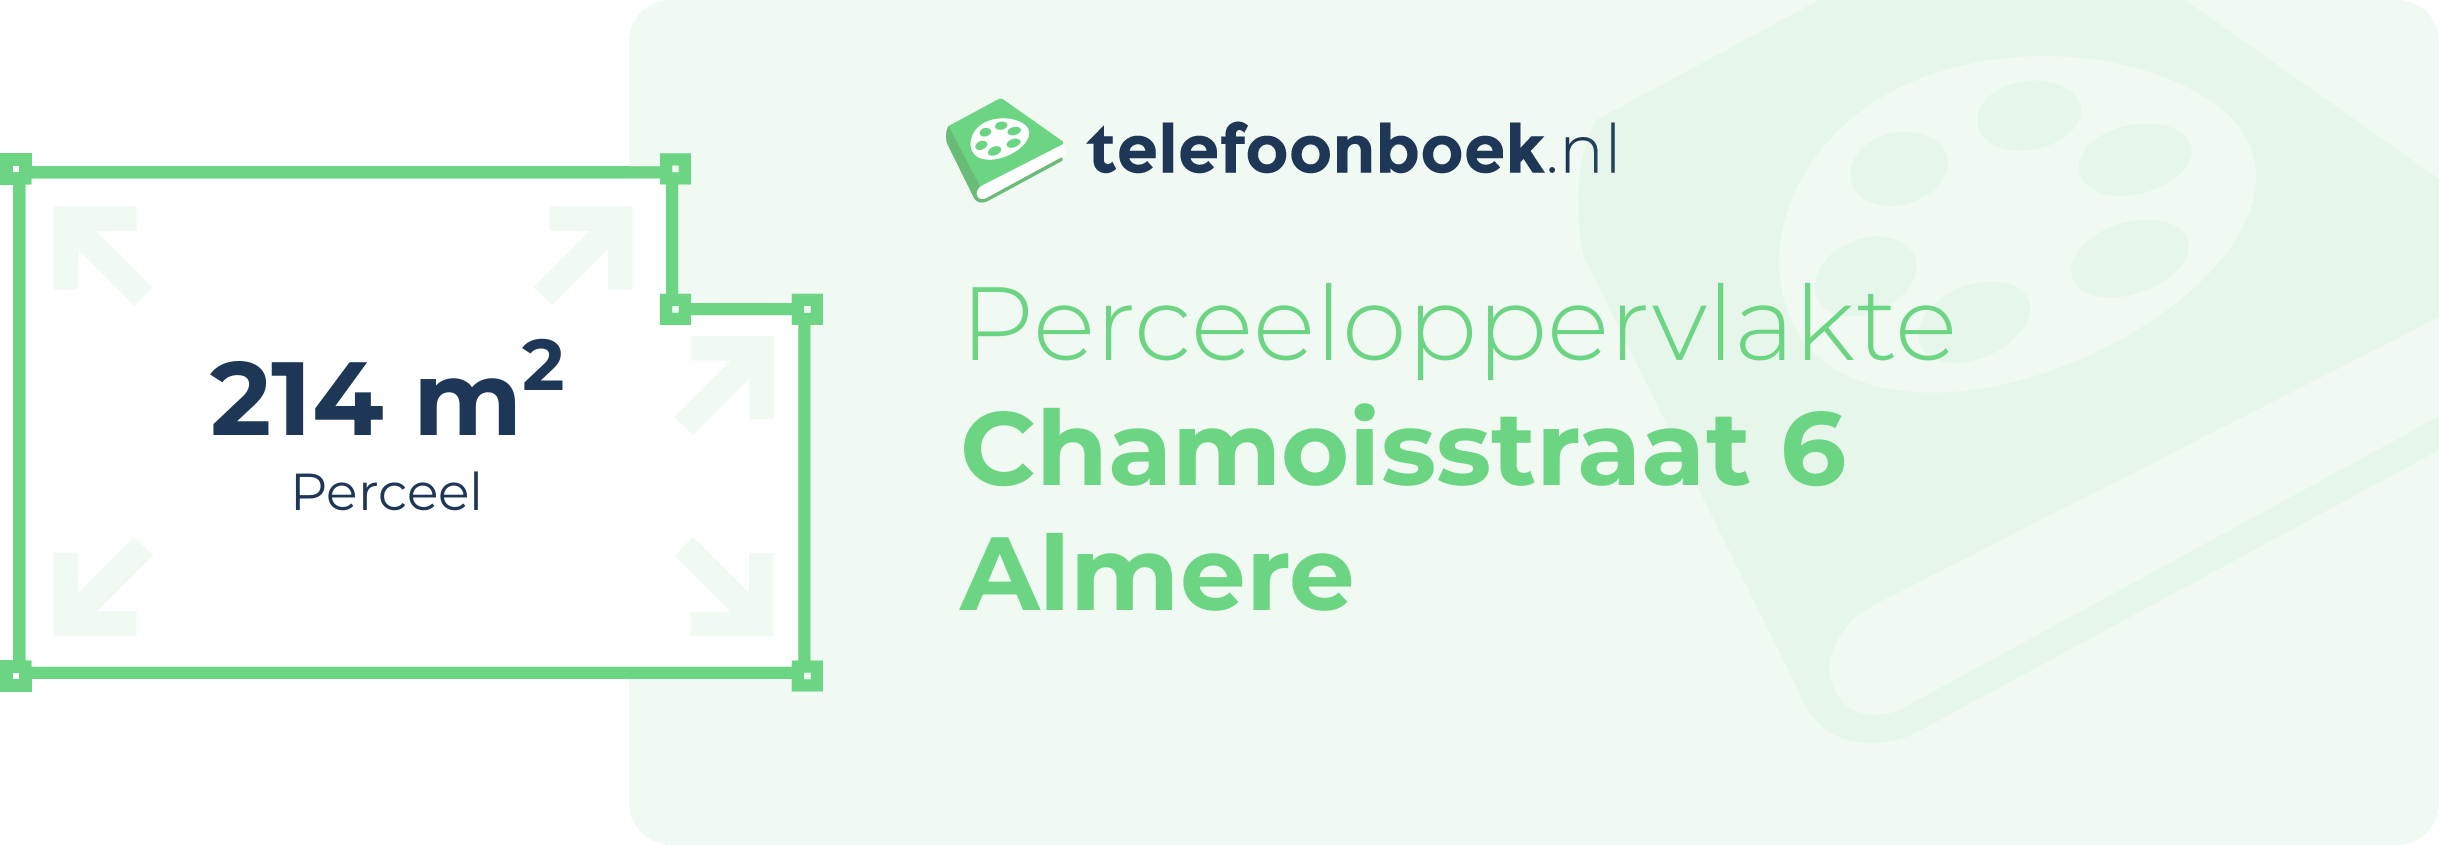 Perceeloppervlakte Chamoisstraat 6 Almere